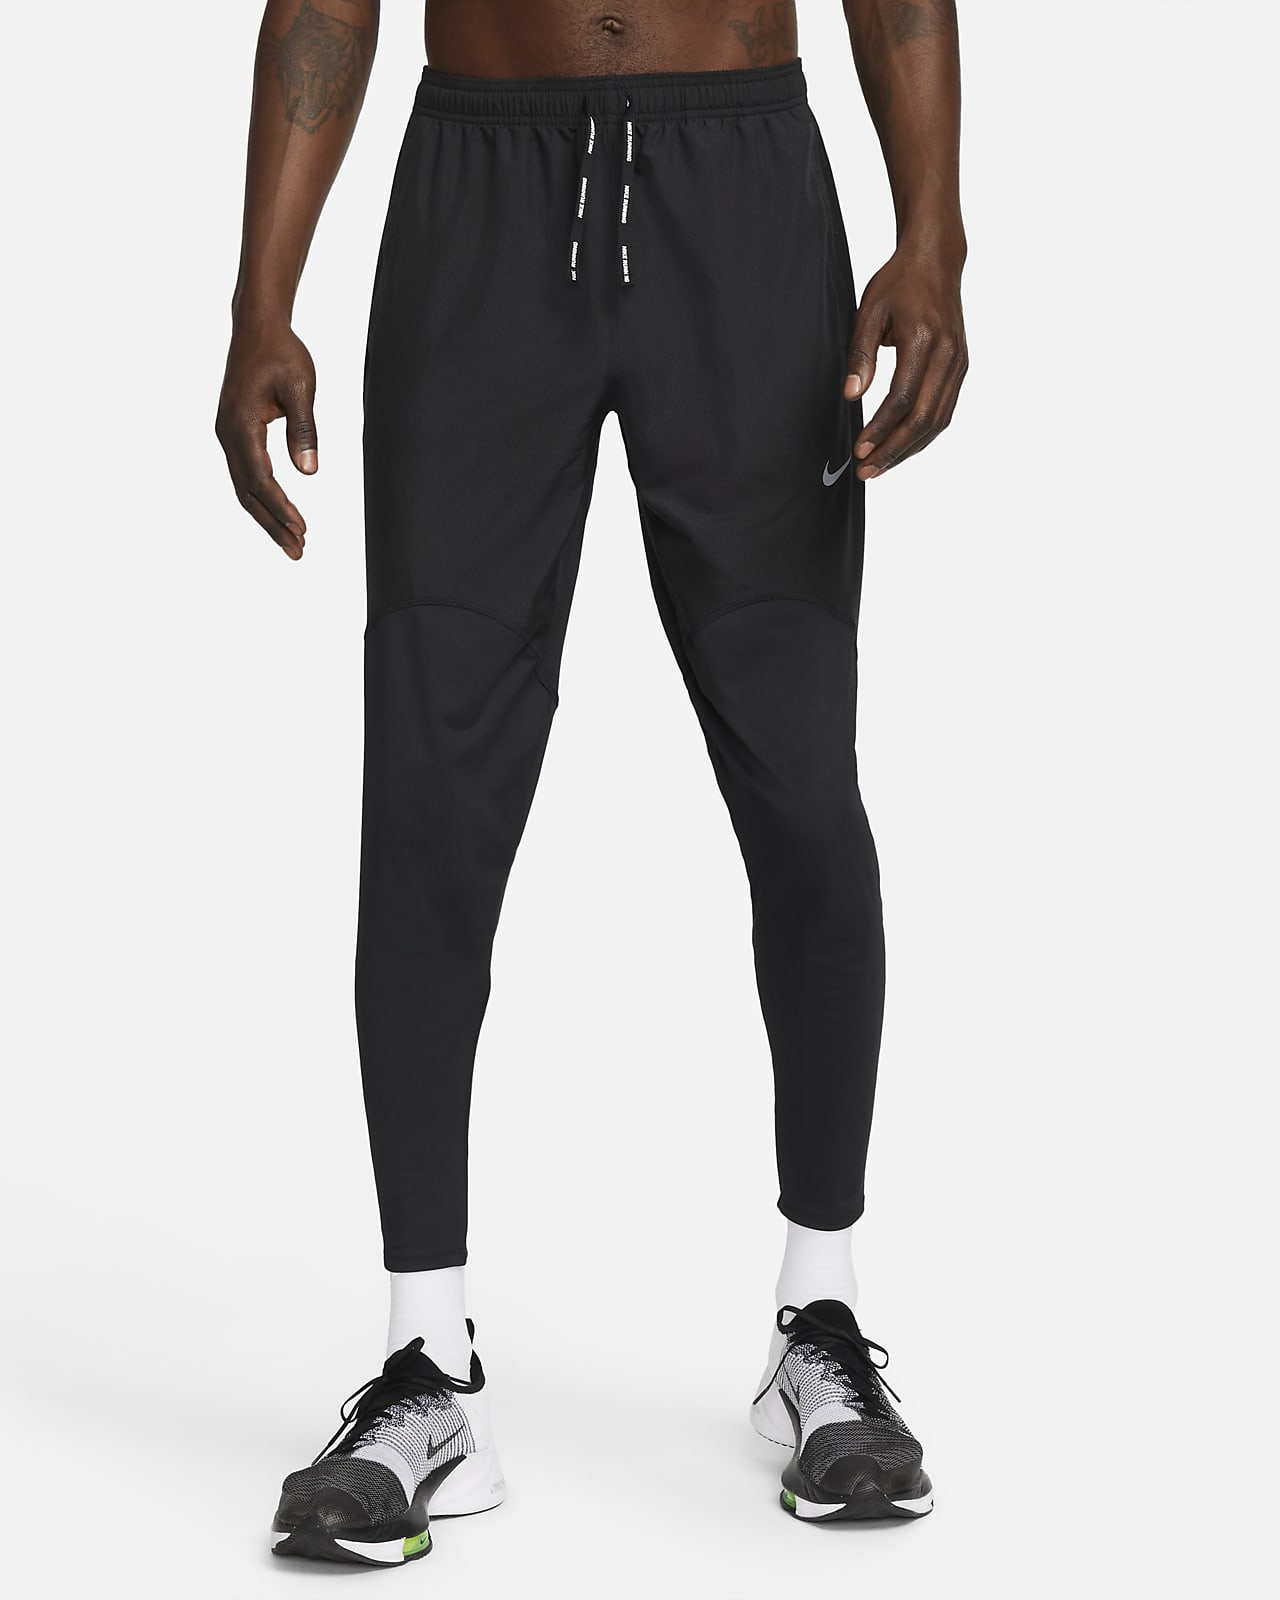 Nike Dri-FIT Men's Racing Trousers